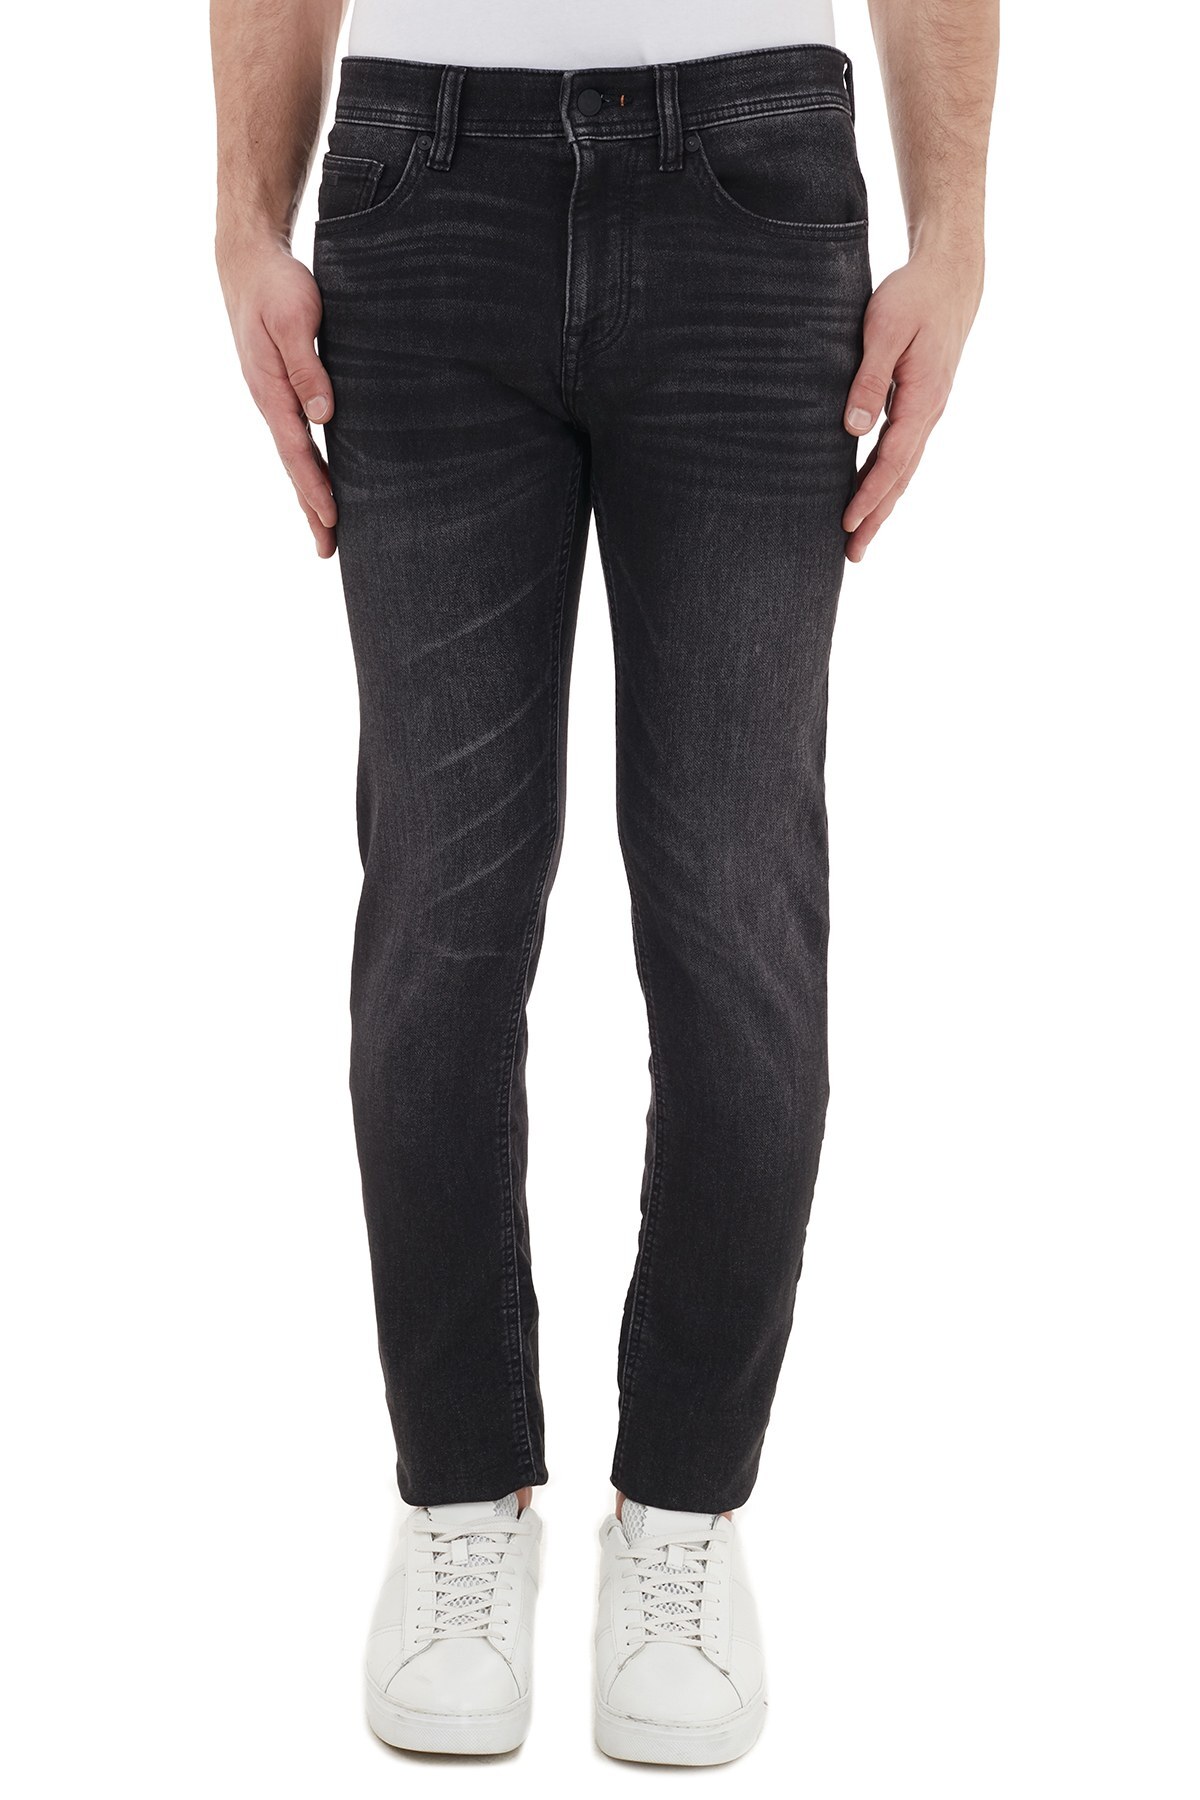 Hugo Boss Slim Fit Pamuklu Jeans Erkek Kot Pantolon 50438826 003 SİYAH